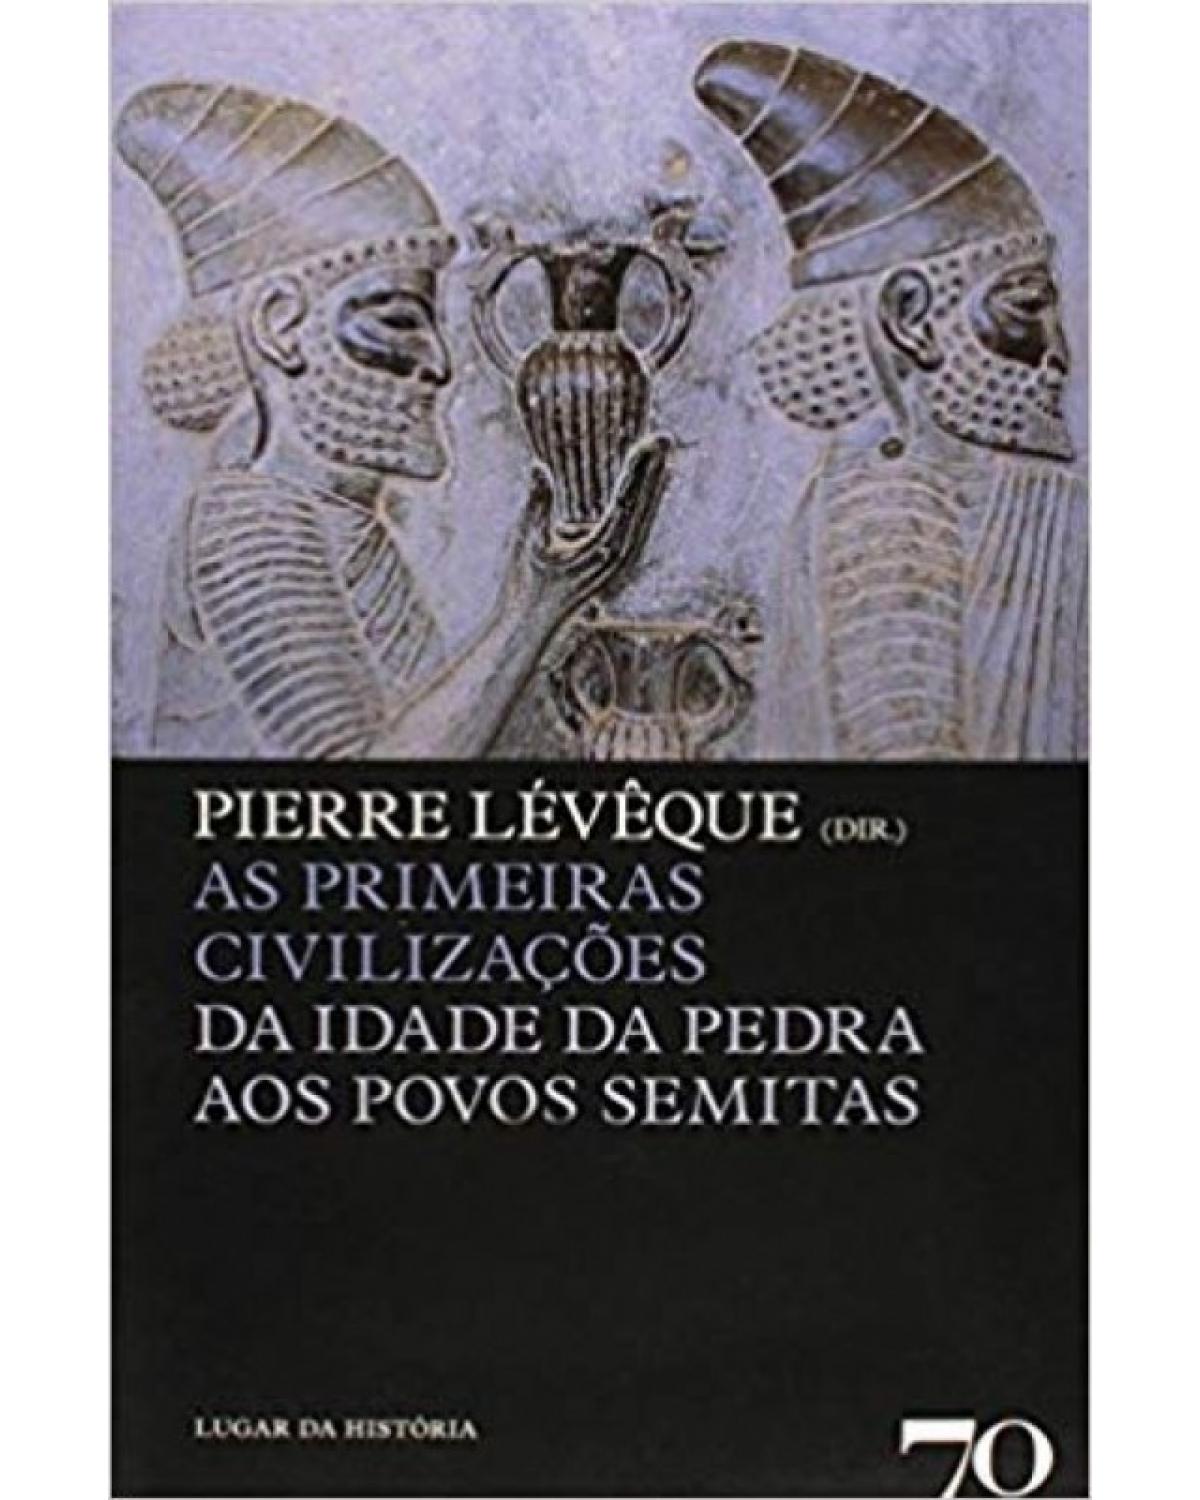 As primeiras civilizações - da idade da pedra aos povos semitas - 1ª Edição | 2009